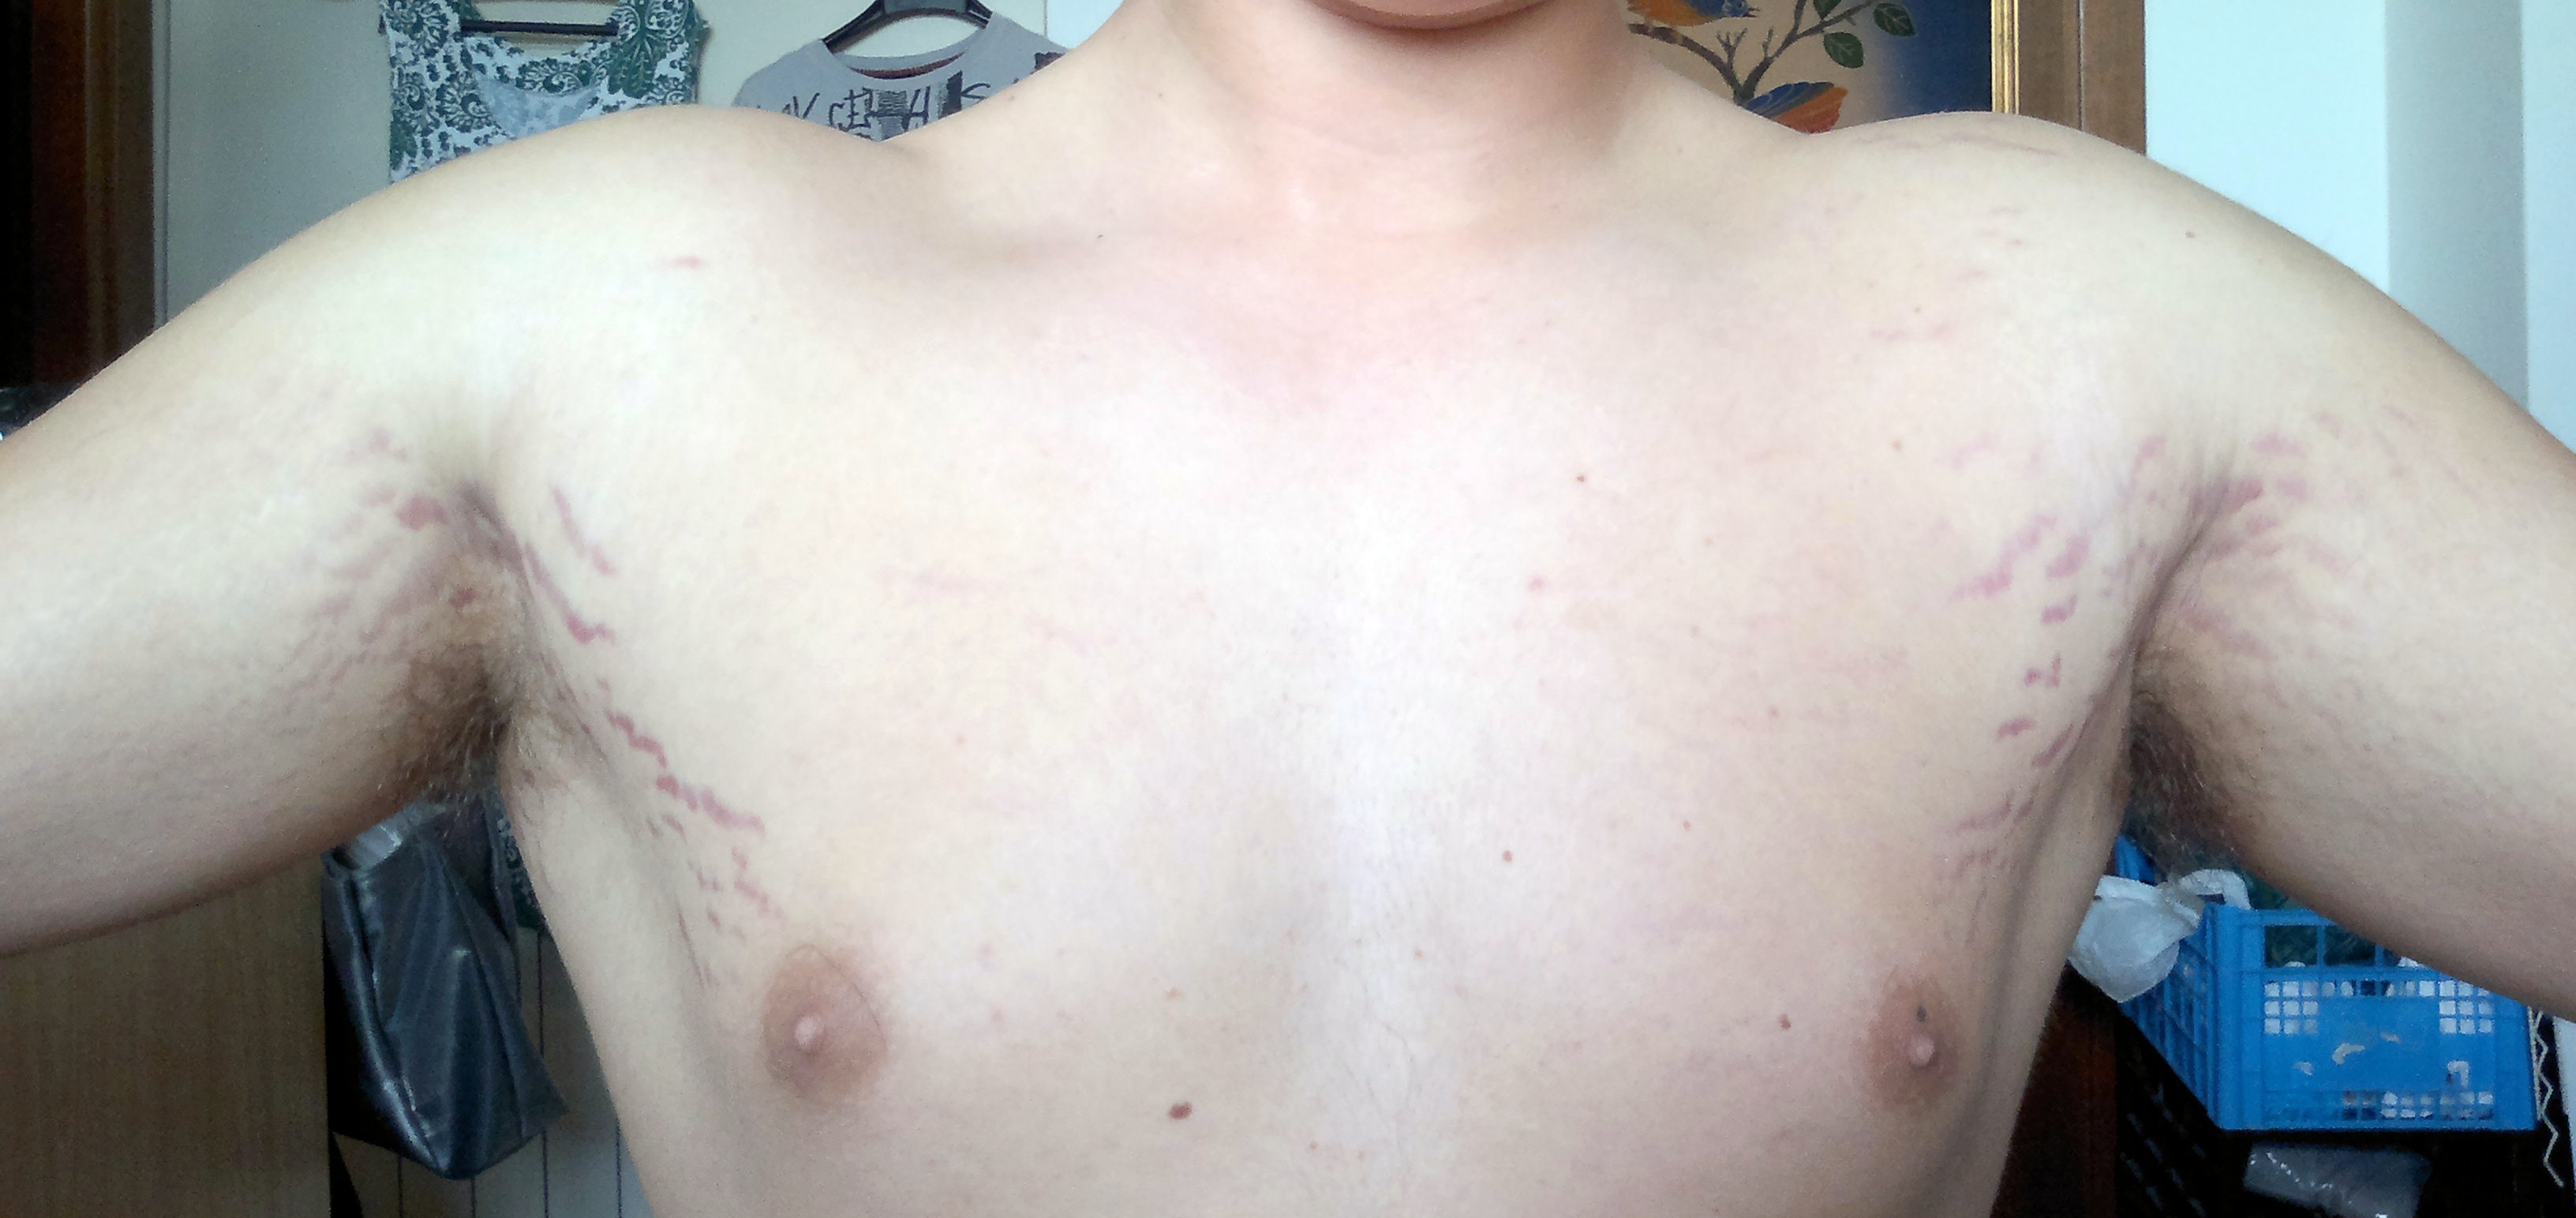 растяжки на груди мужчин фото 10